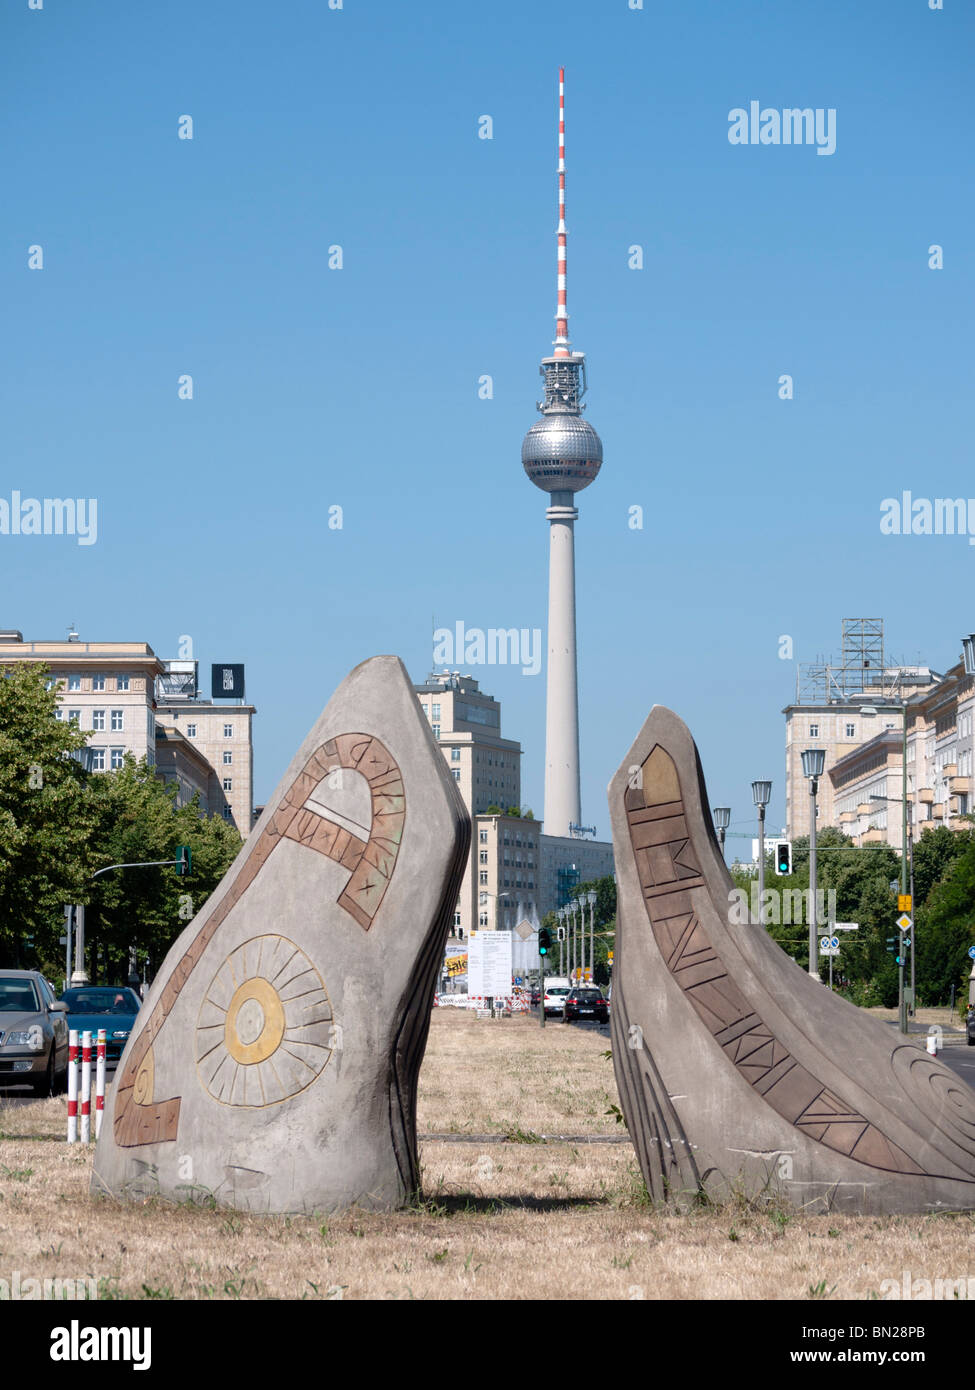 Afficher le long de Karl Marx Allee à l'égard de la télévision ou de la tour Fernsehturm Alexanderplatz à Berlin dans l'ex-Allemagne Banque D'Images